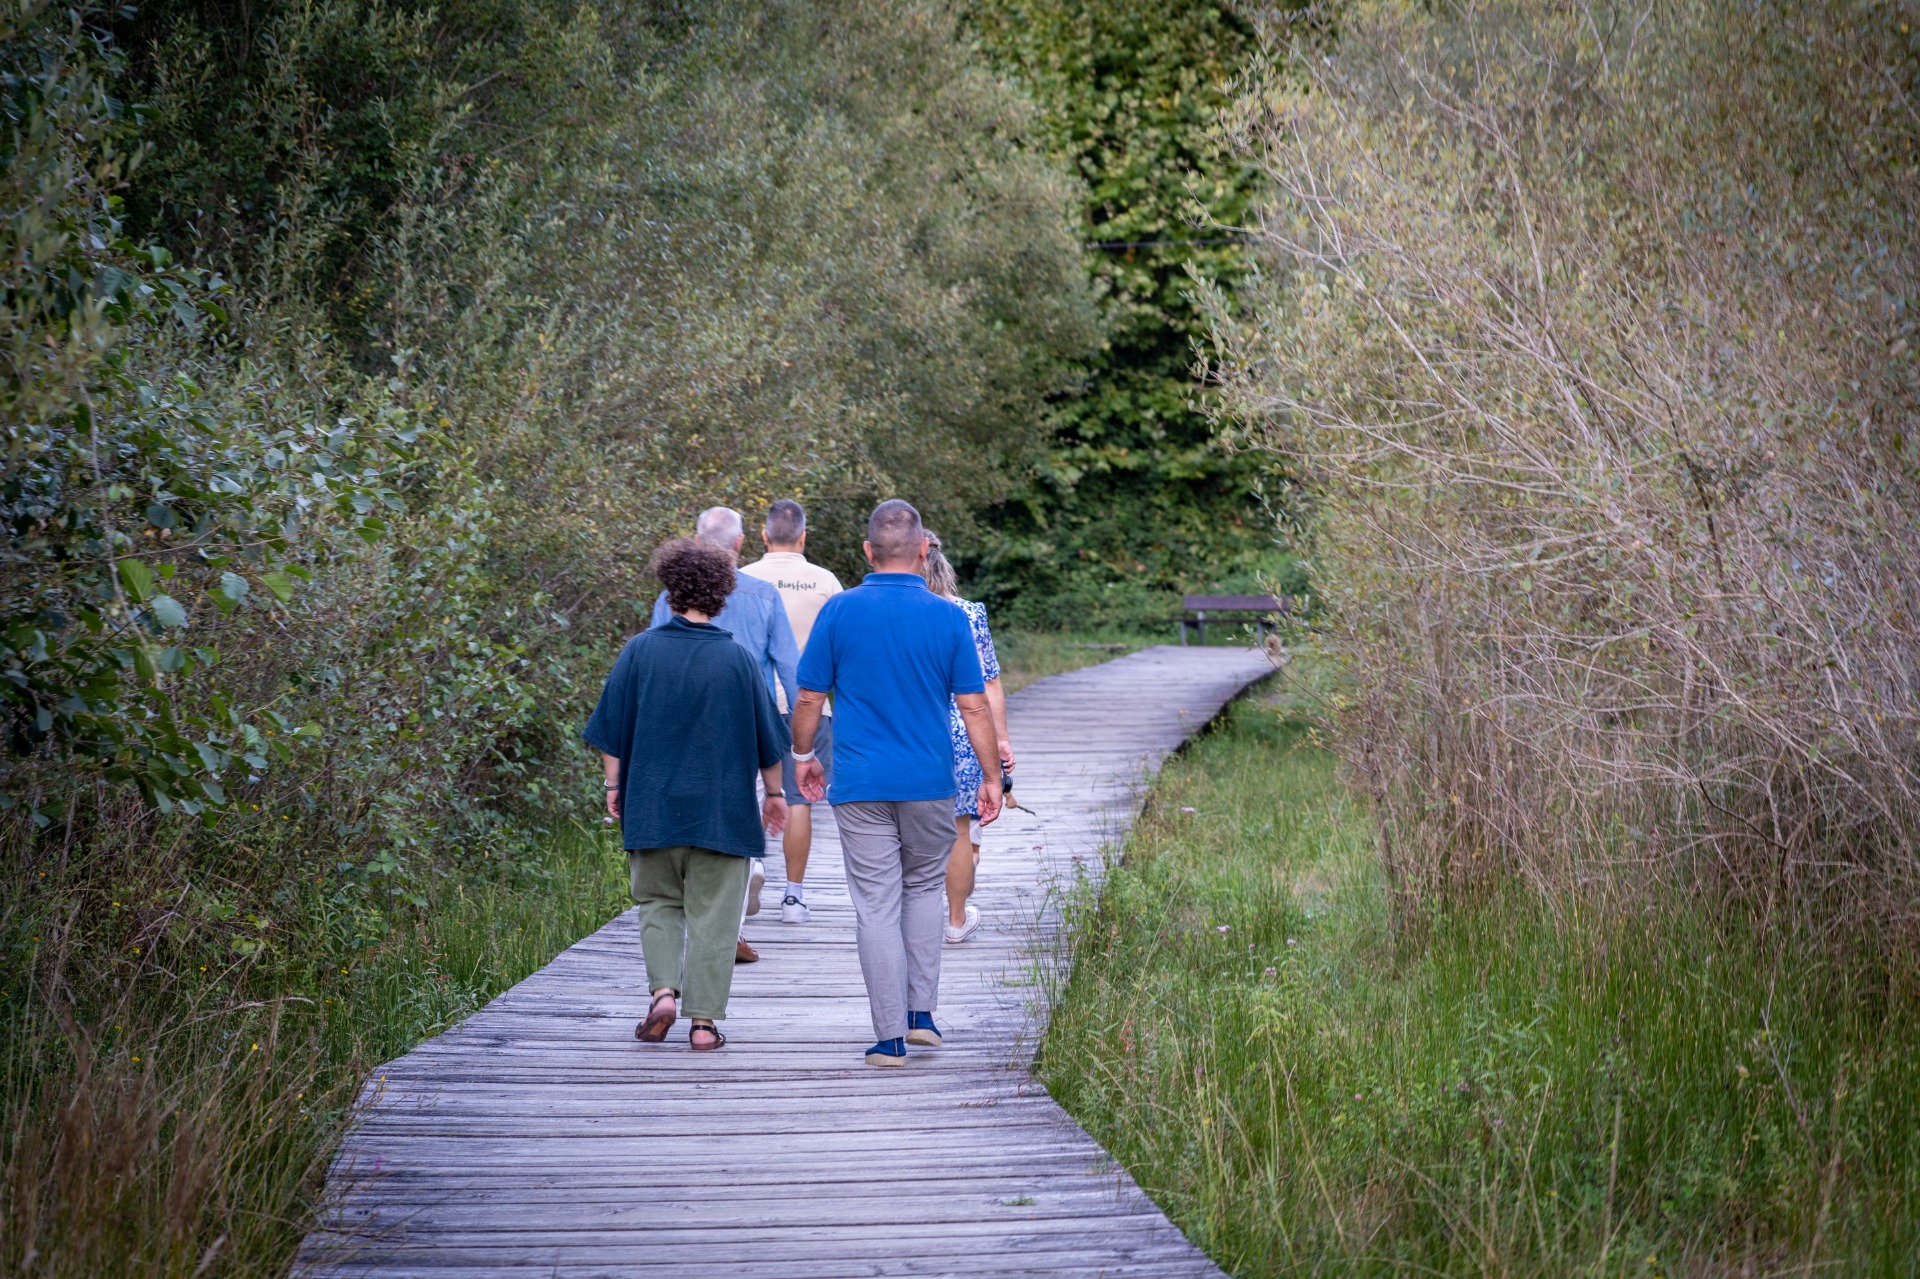  Varias personas caminando por un sendero entre arboles